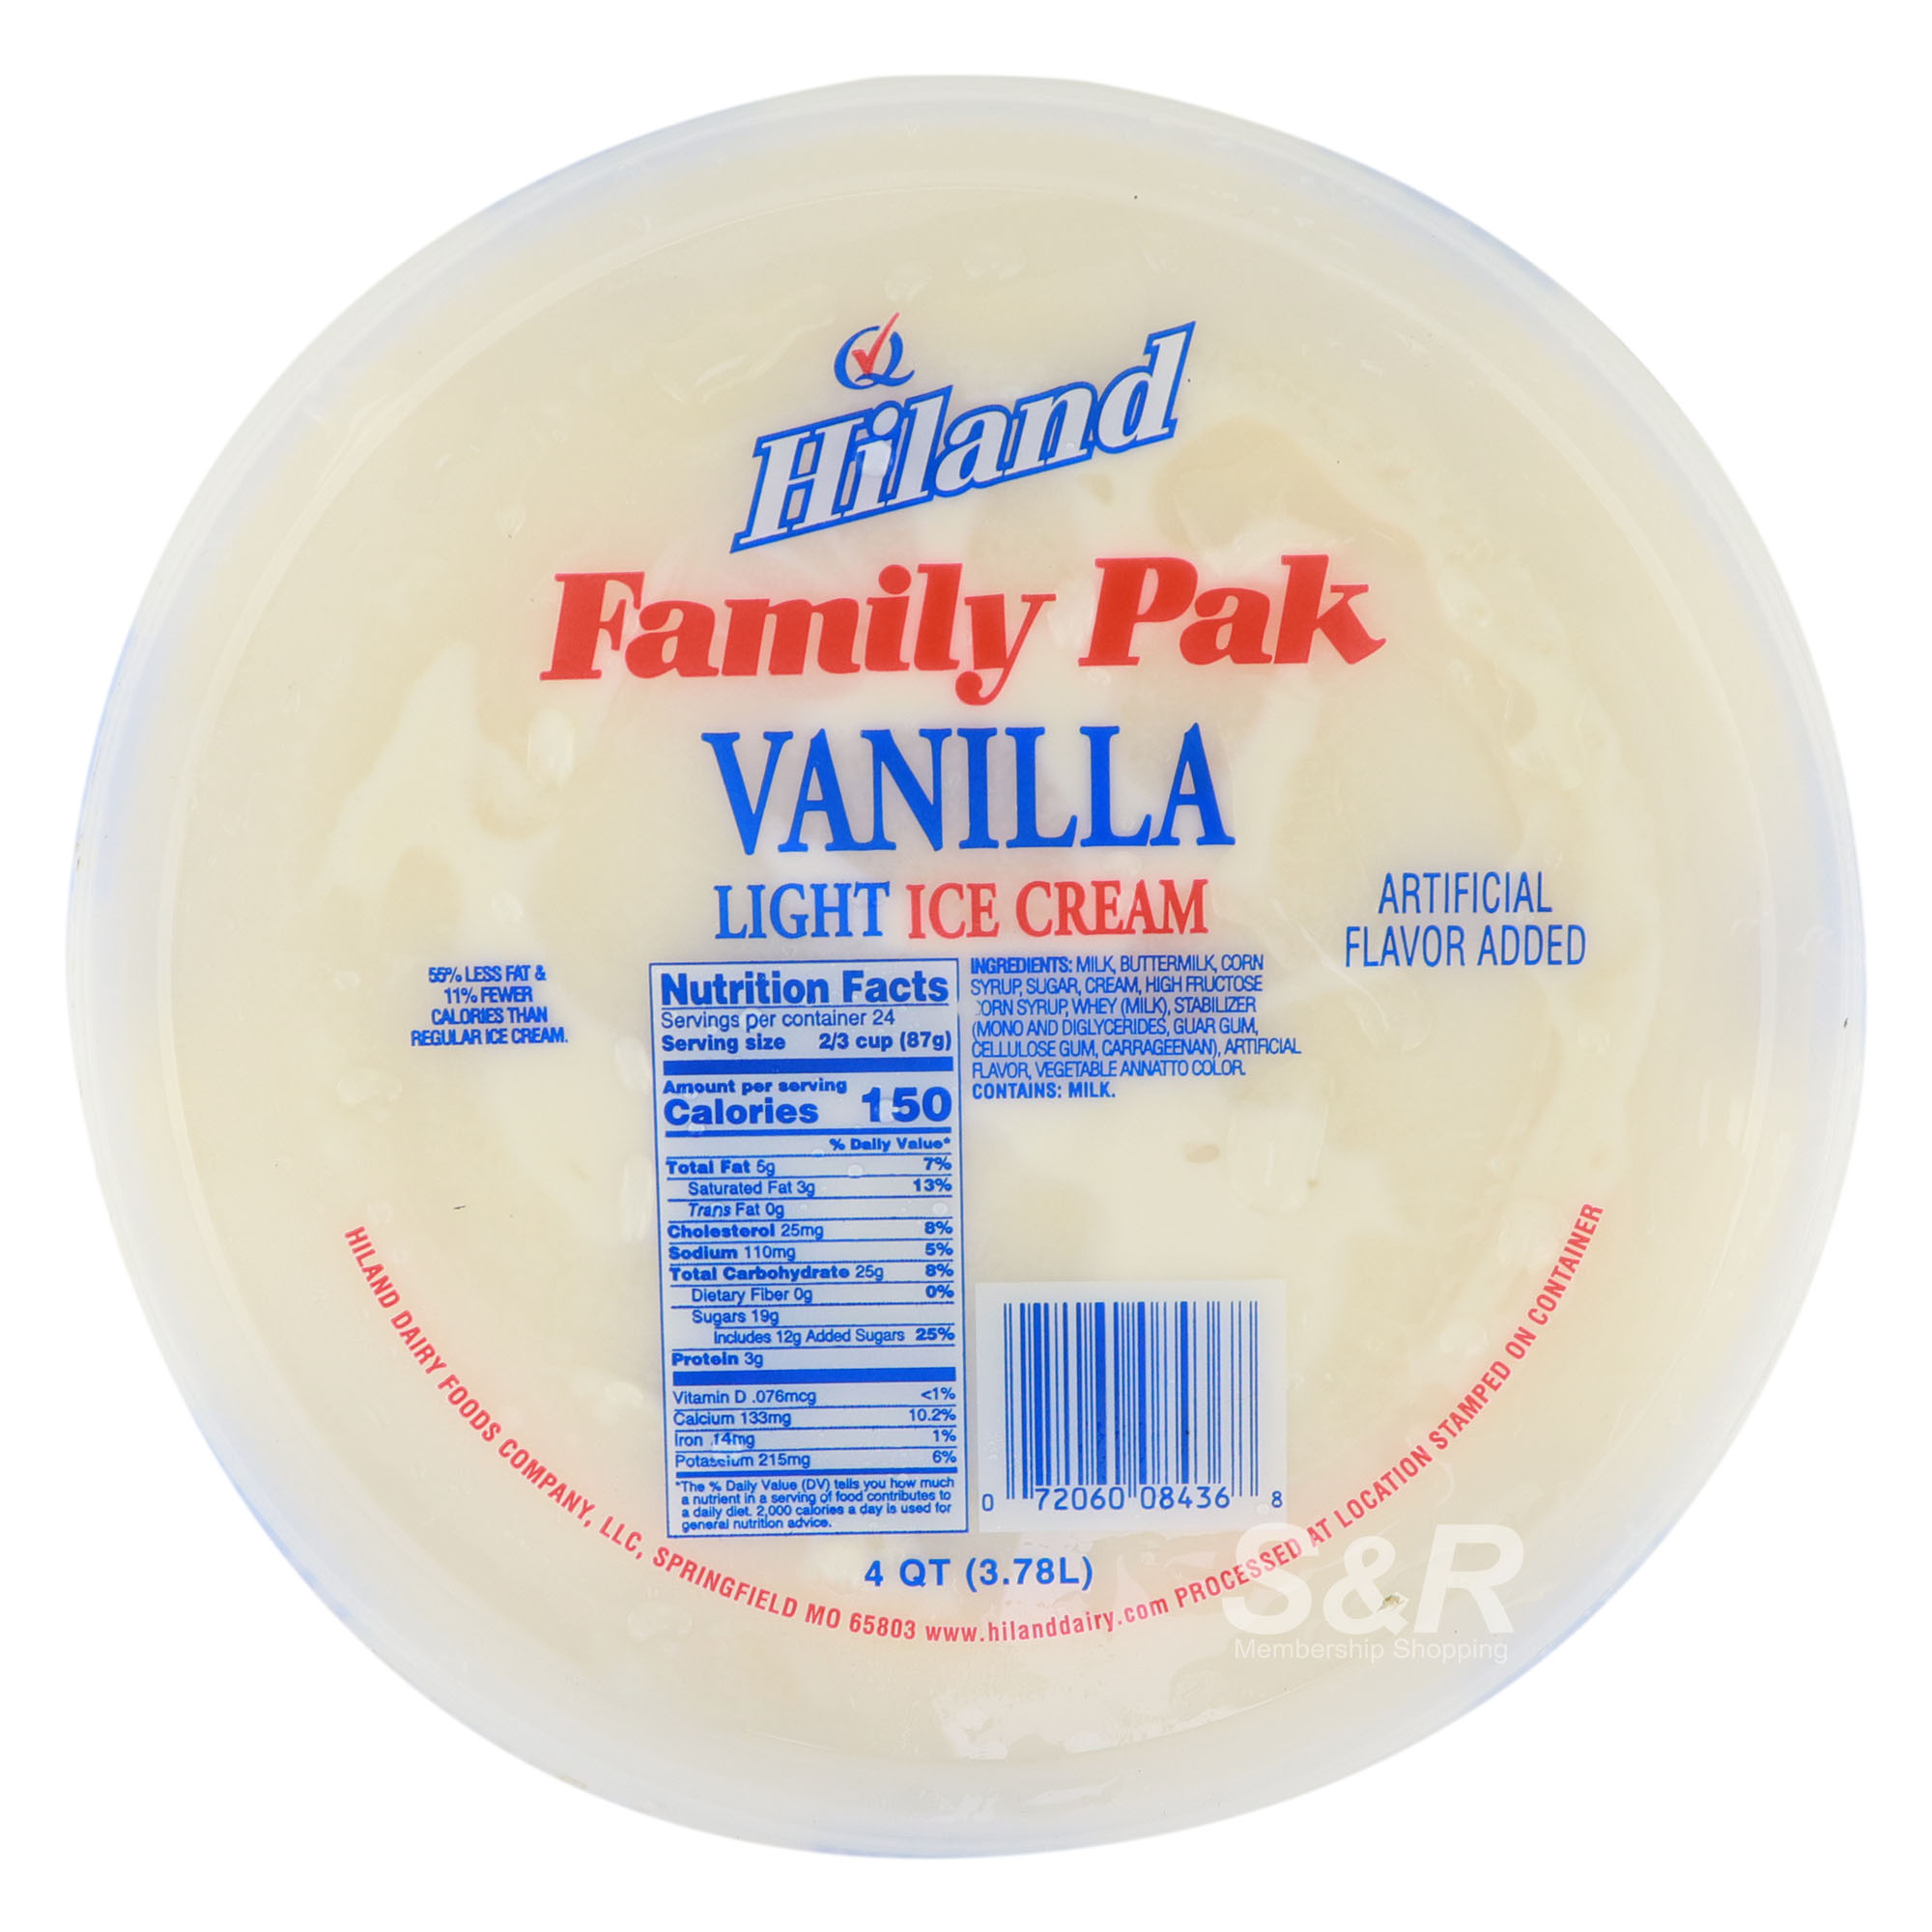 Light Ice Cream